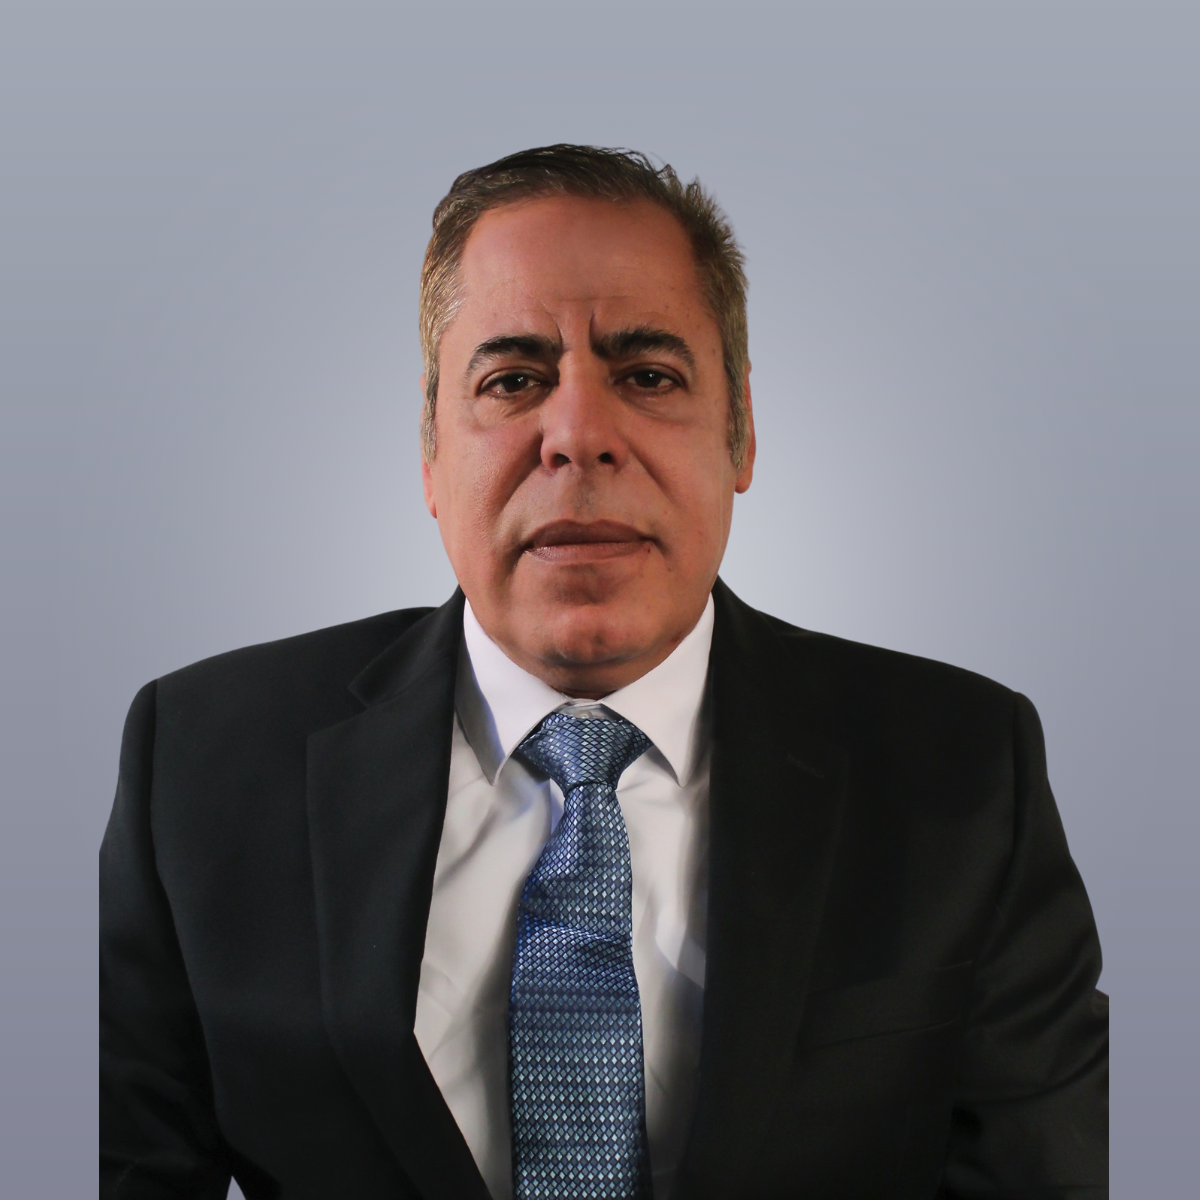 Zoser Mohamed, CEO